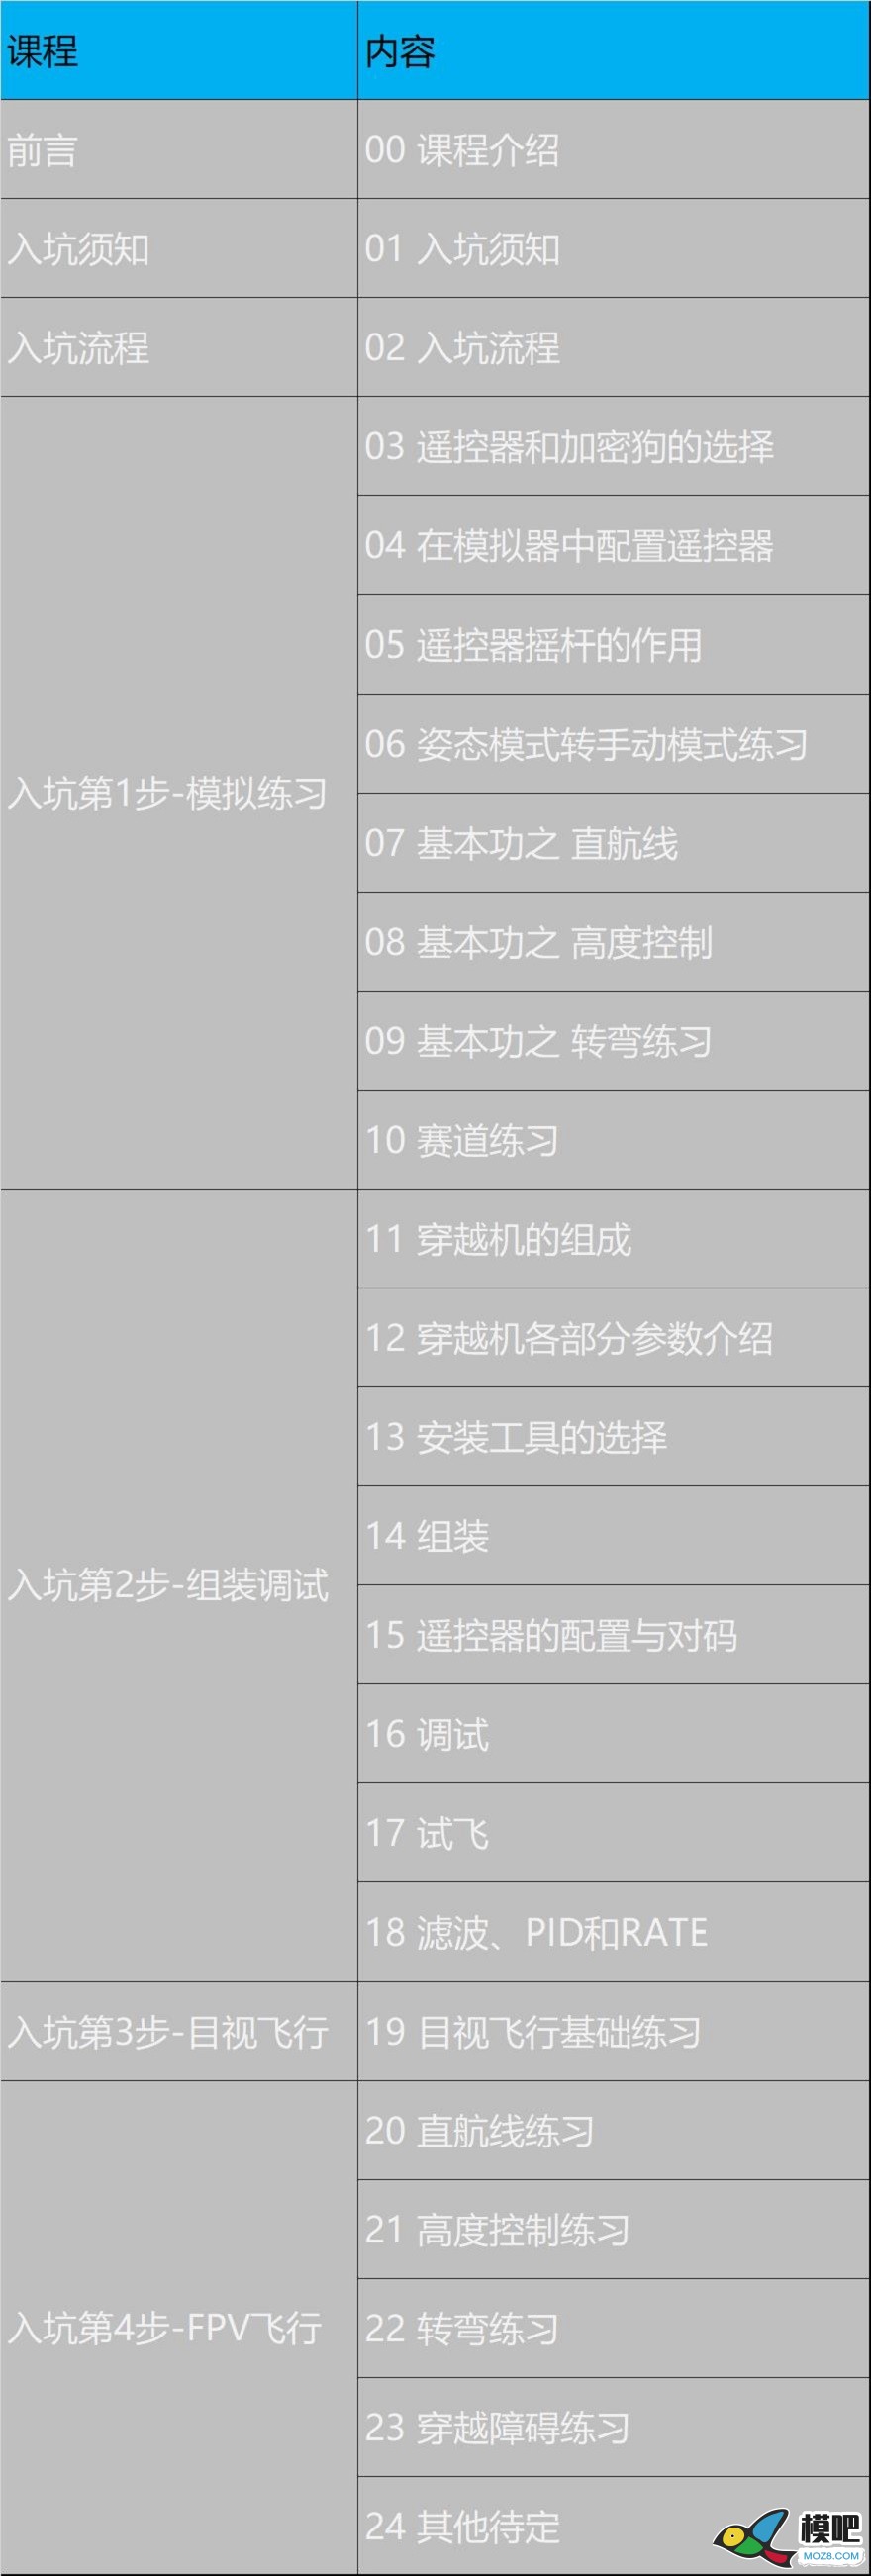 《穿越机入坑指南》已更新至3.11 穿越机的可选配件 穿越机,电池,天线,电调,电机 作者:yangjinduo 5910 